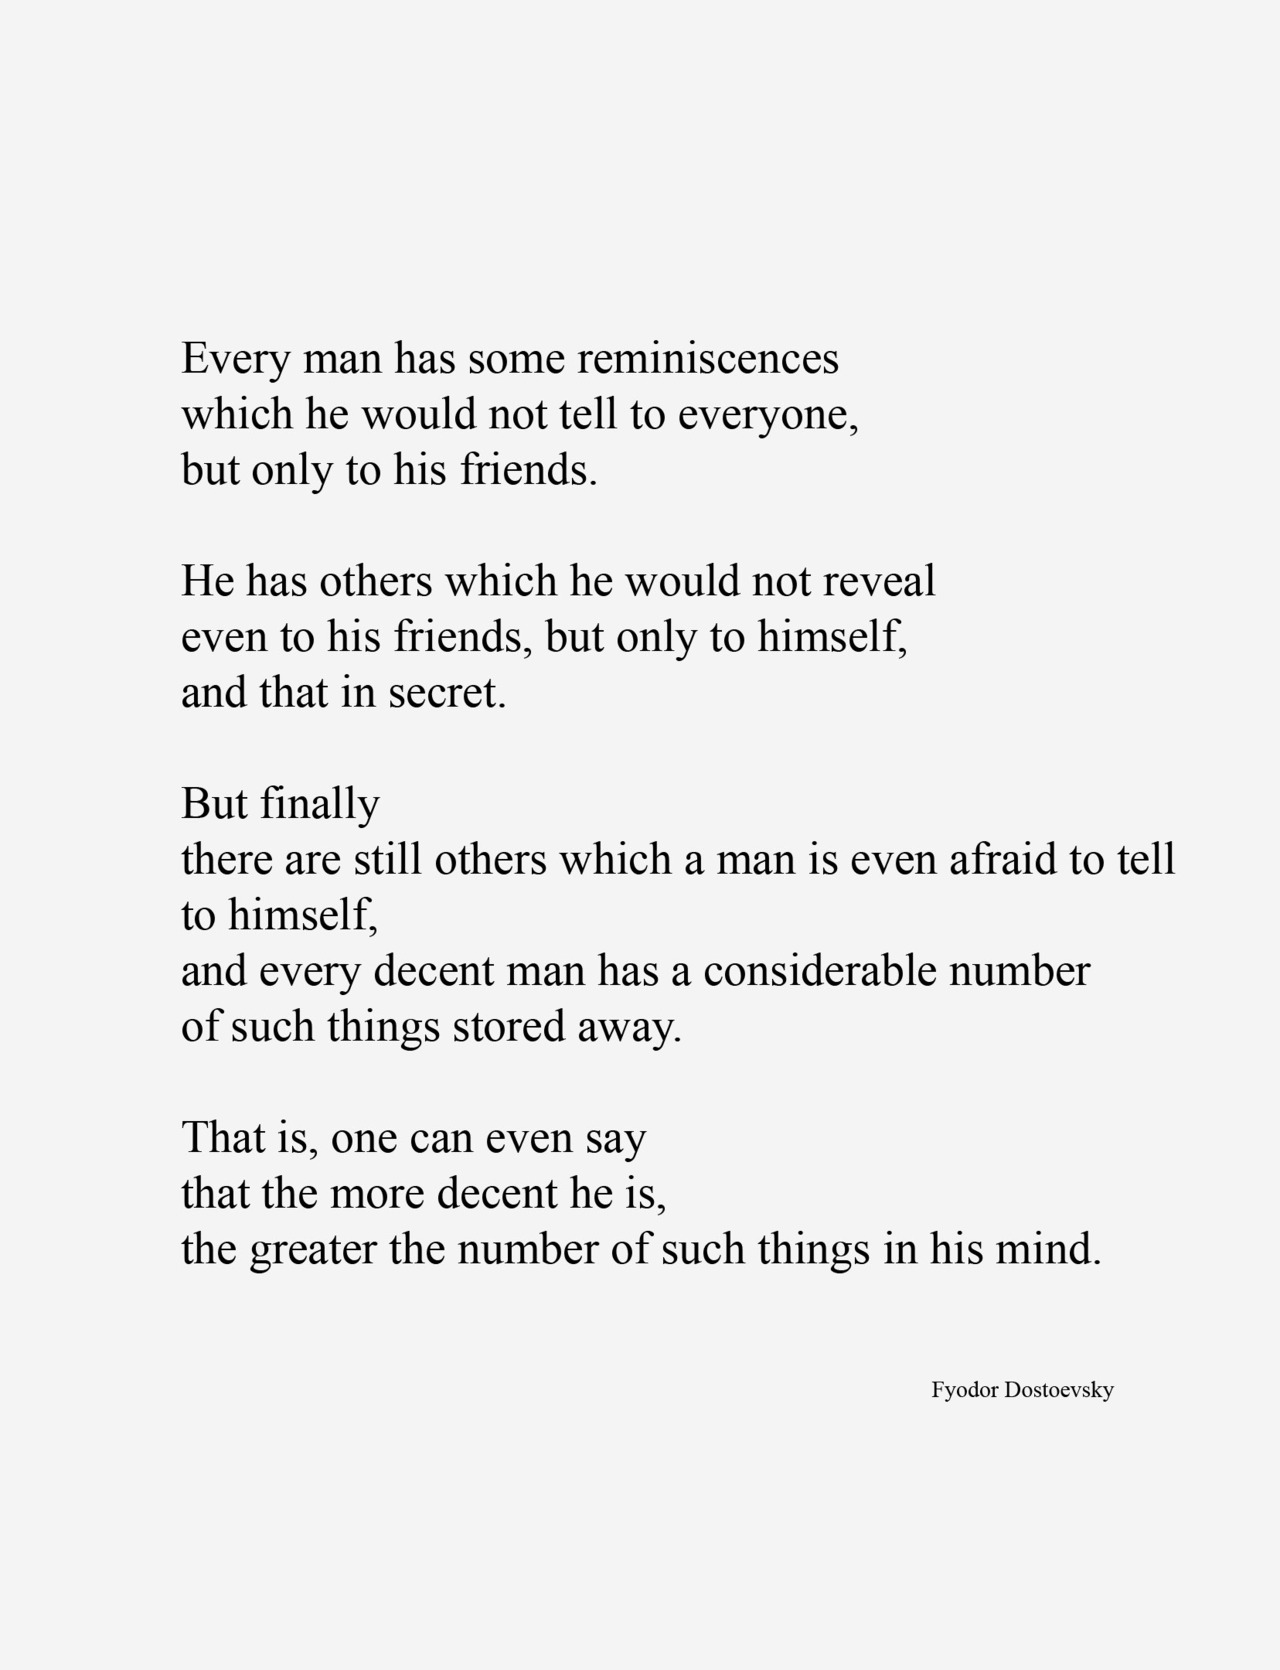 Fyodor Dostoevsky's quote #3